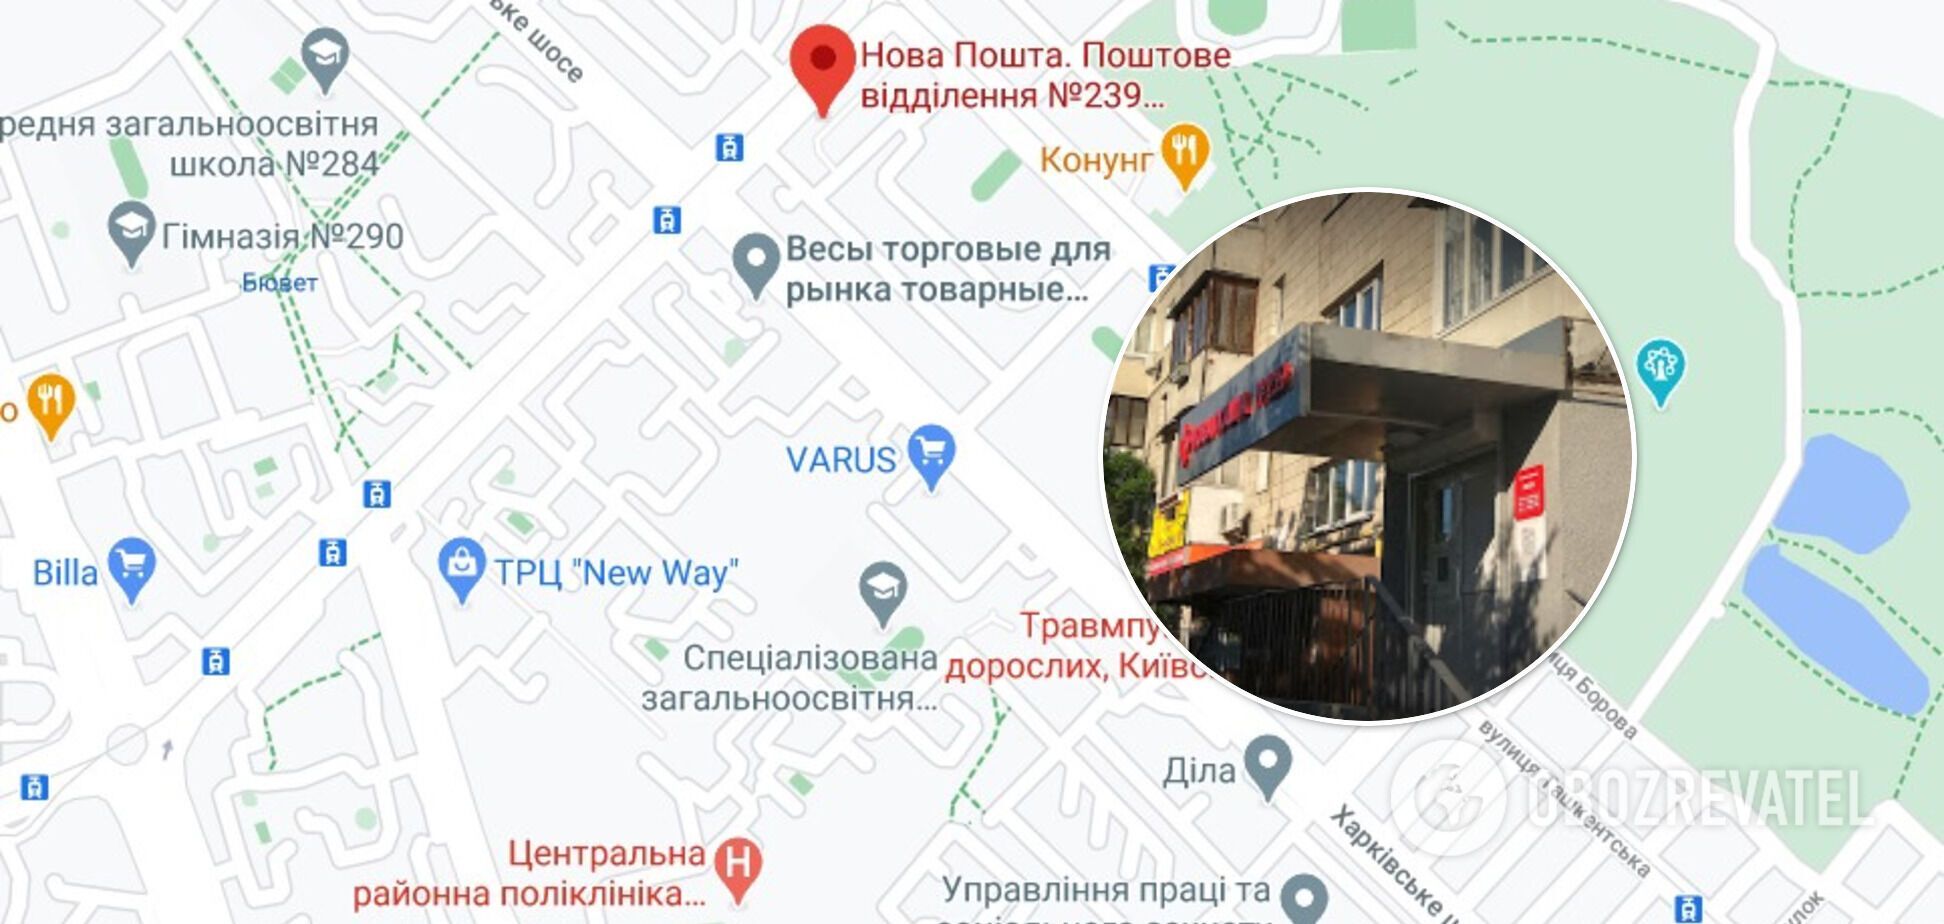 В отделении "Новой почты" в Киеве произошло разбойное нападение